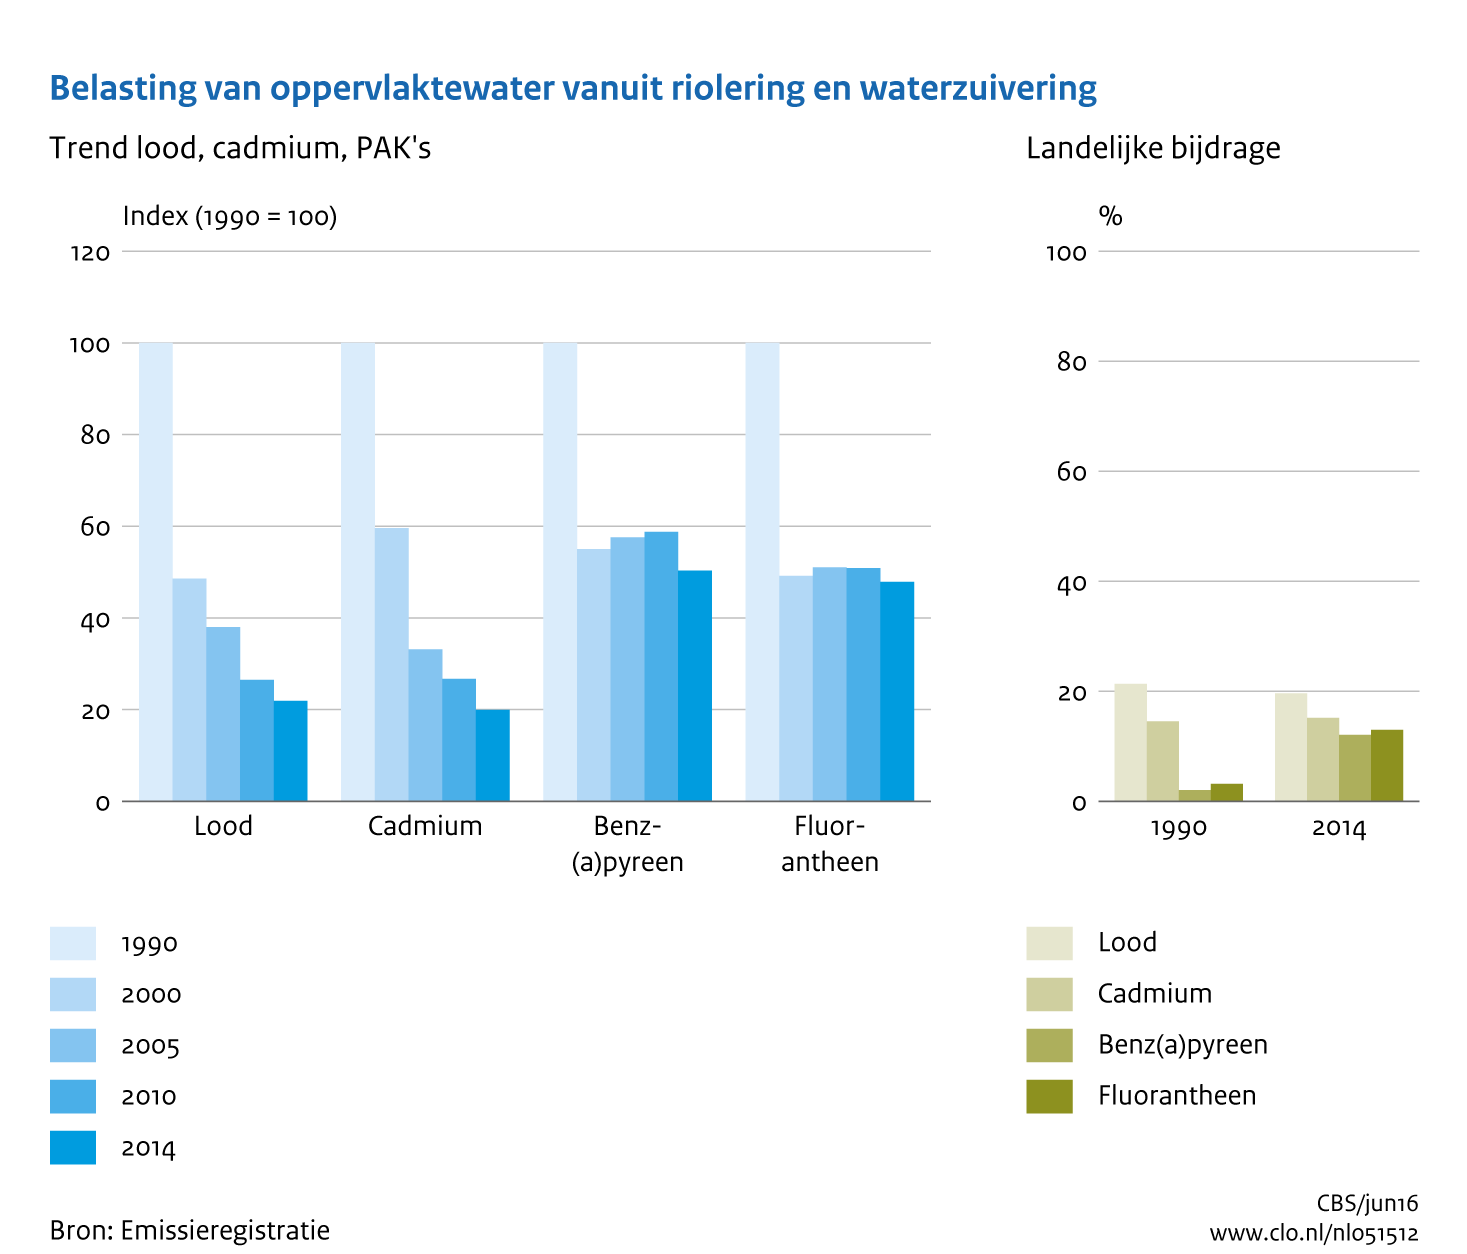 Figuur Belasting oppervlaktewater vanuit riolering en rioolwaterzuivering met lood, cadmium, PAK's. In de rest van de tekst wordt deze figuur uitgebreider uitgelegd.